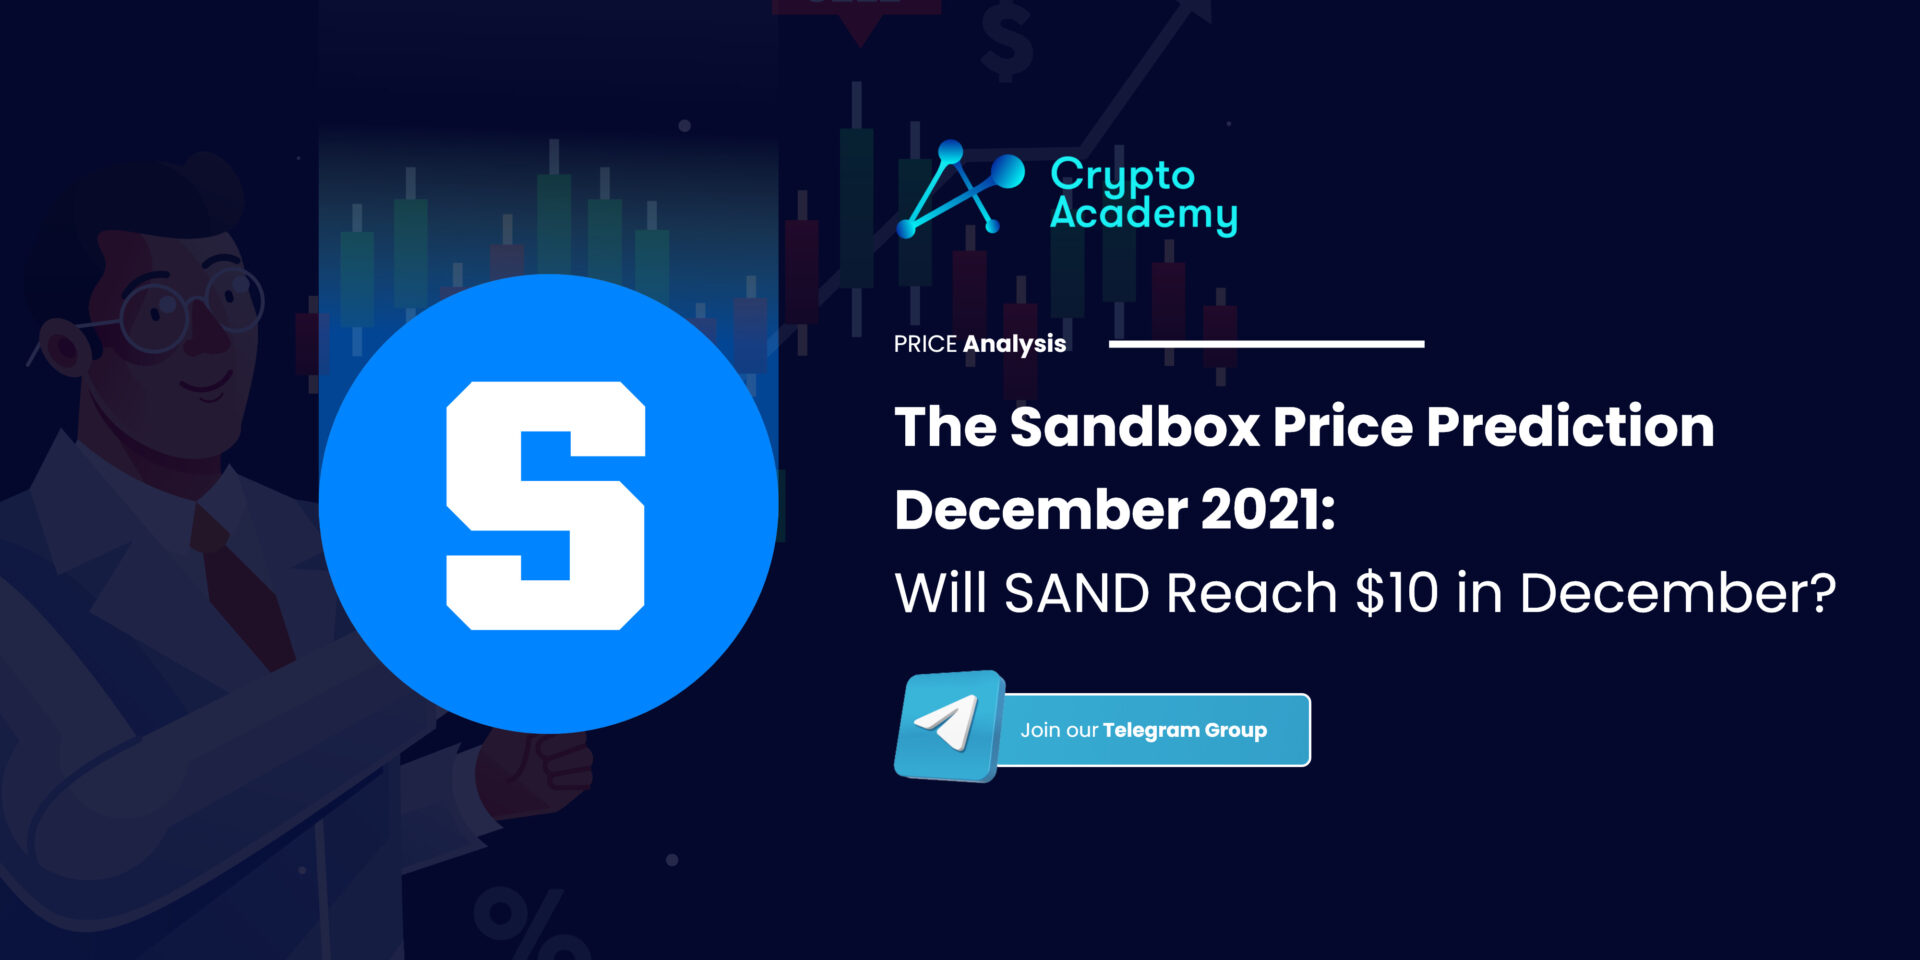 The Sandbox Price Prediction December 2021: Will SAND Reach $10 in December?